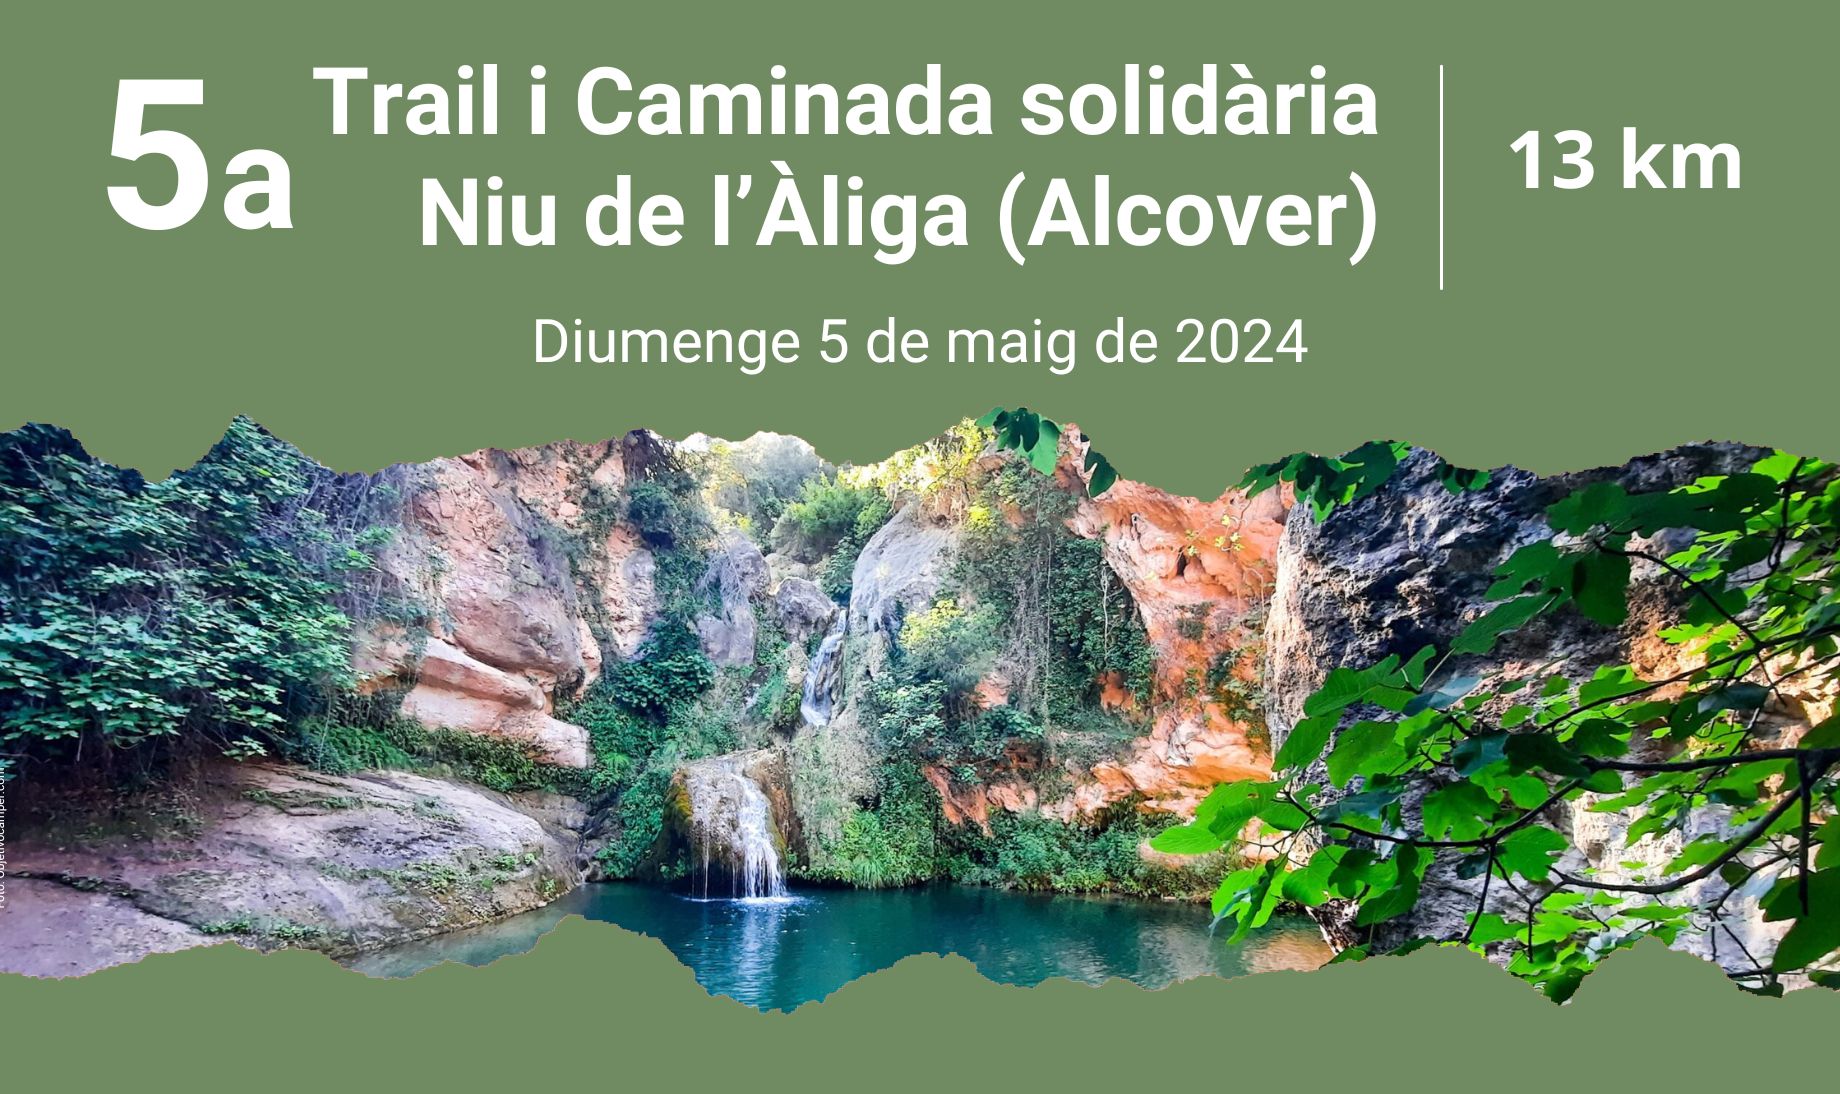 5a TRAIL  I CAMINADA SOLIDÀRIA NIU D'ÀLIGA - ALCOVER